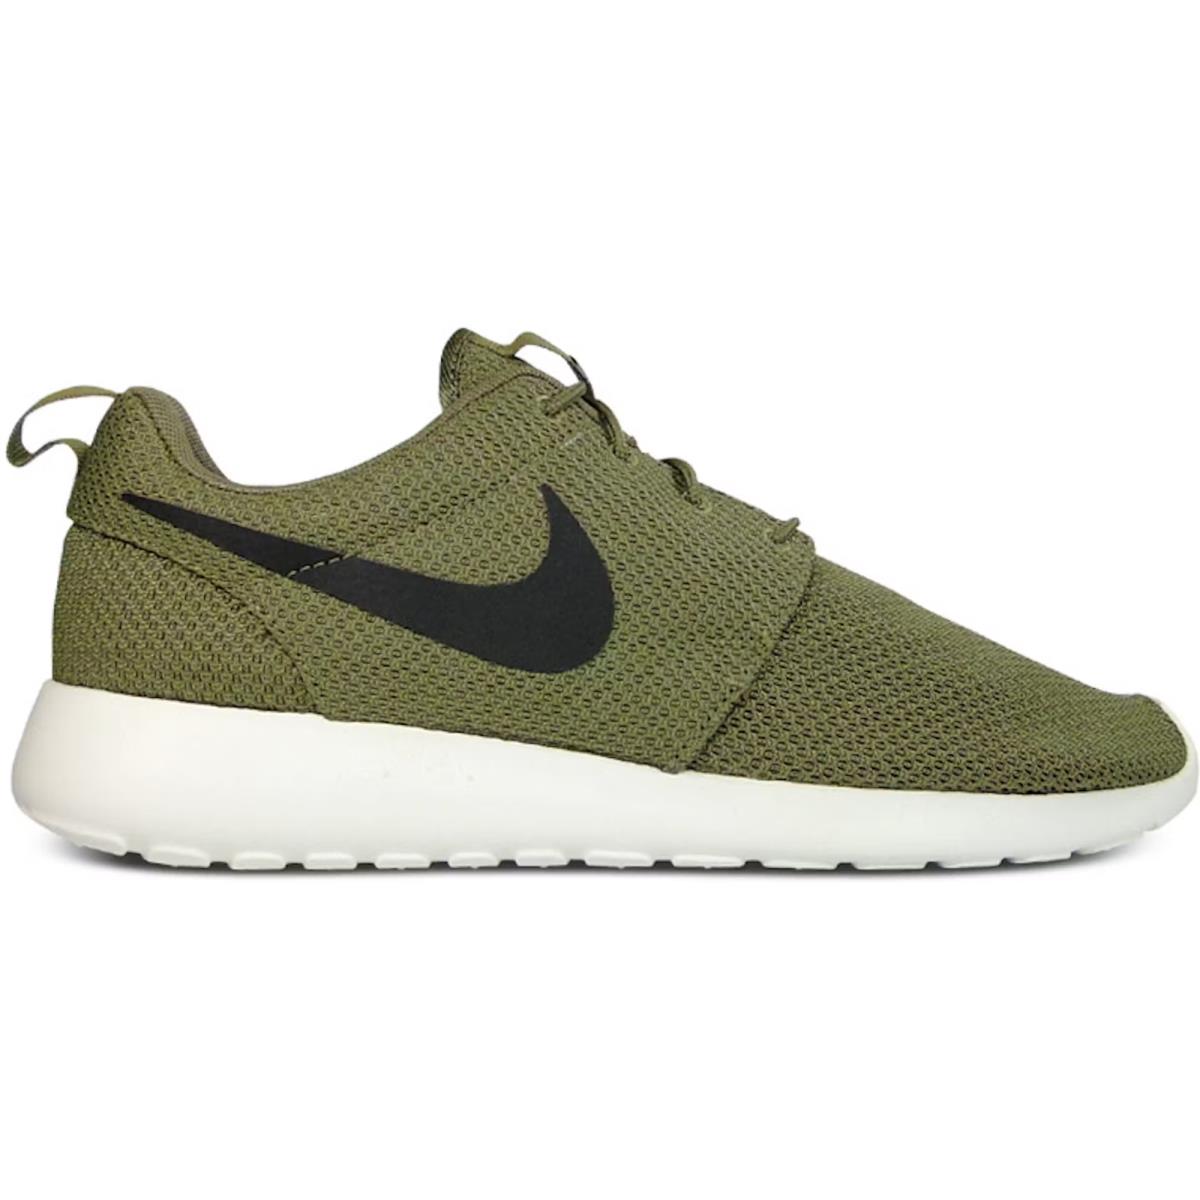 Nike Roshe Run 511881-201 Men`s Green White Running Sneaker Shoes CG197 - Green & White